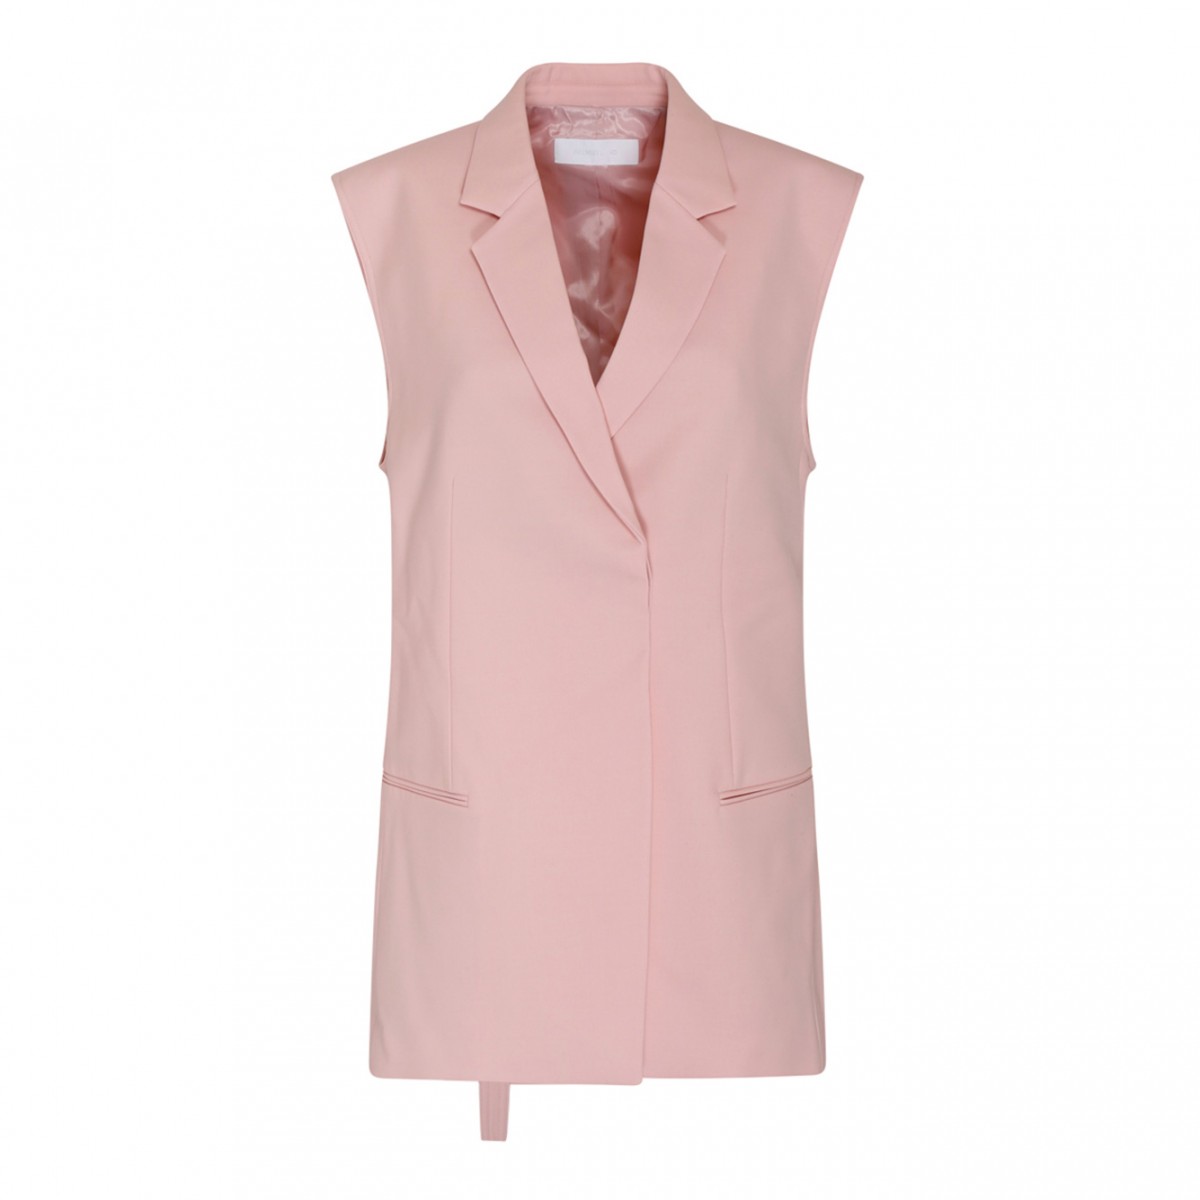 Light Pink Belted Blazer Vest